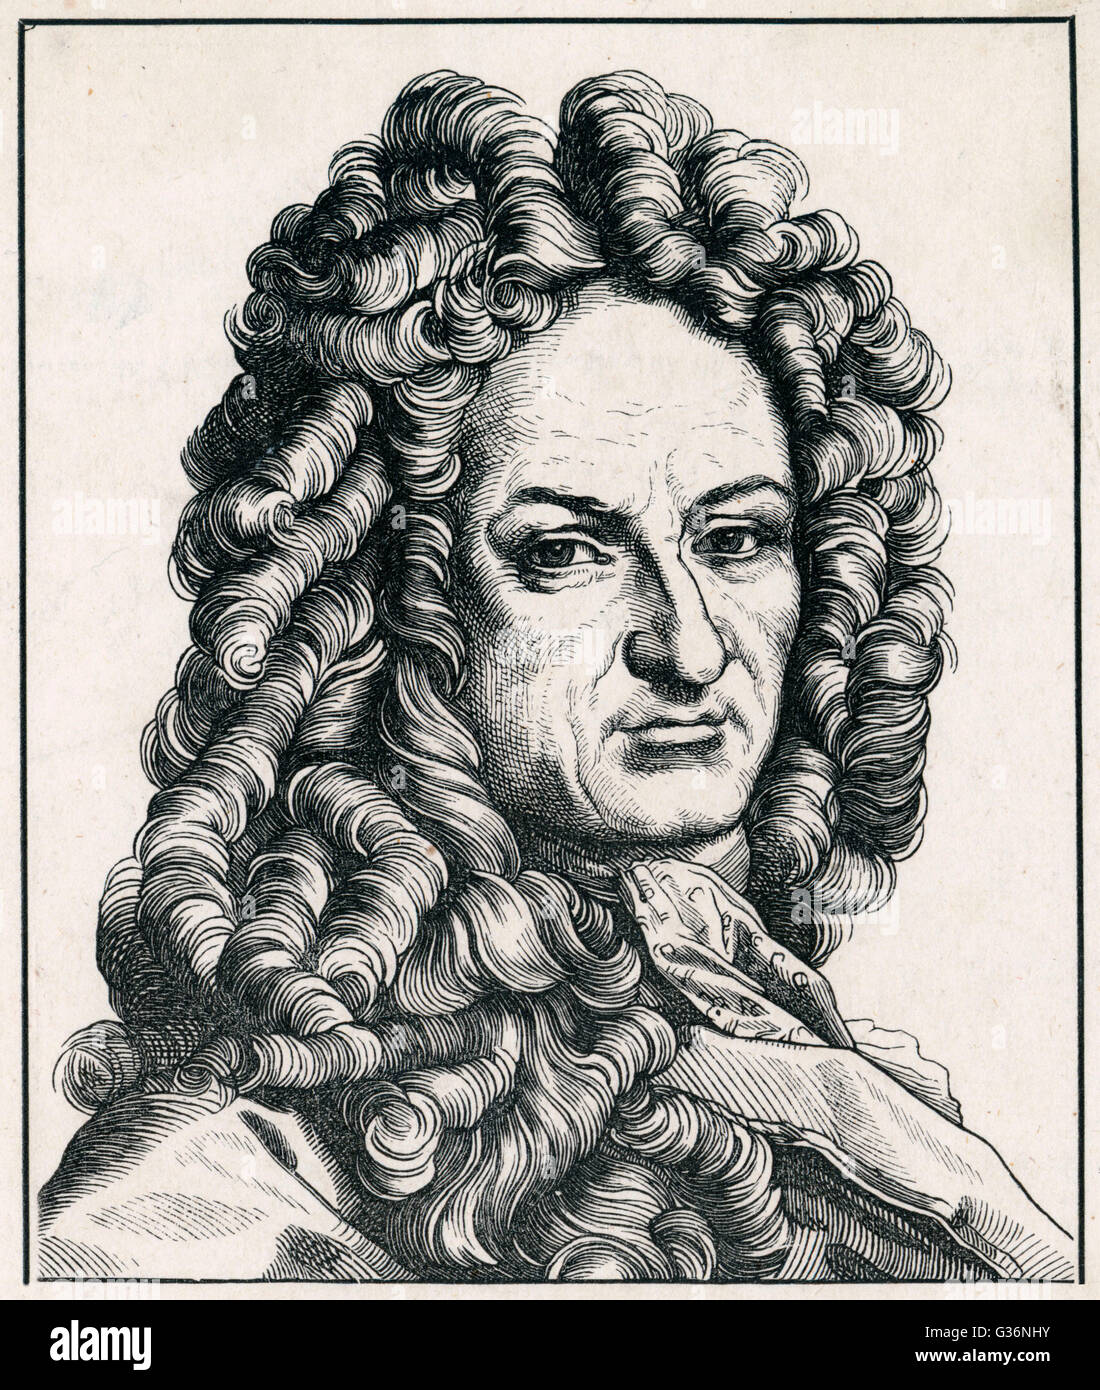 Gottfried von Leibniz, German mathematician and philosopher Stock Photo